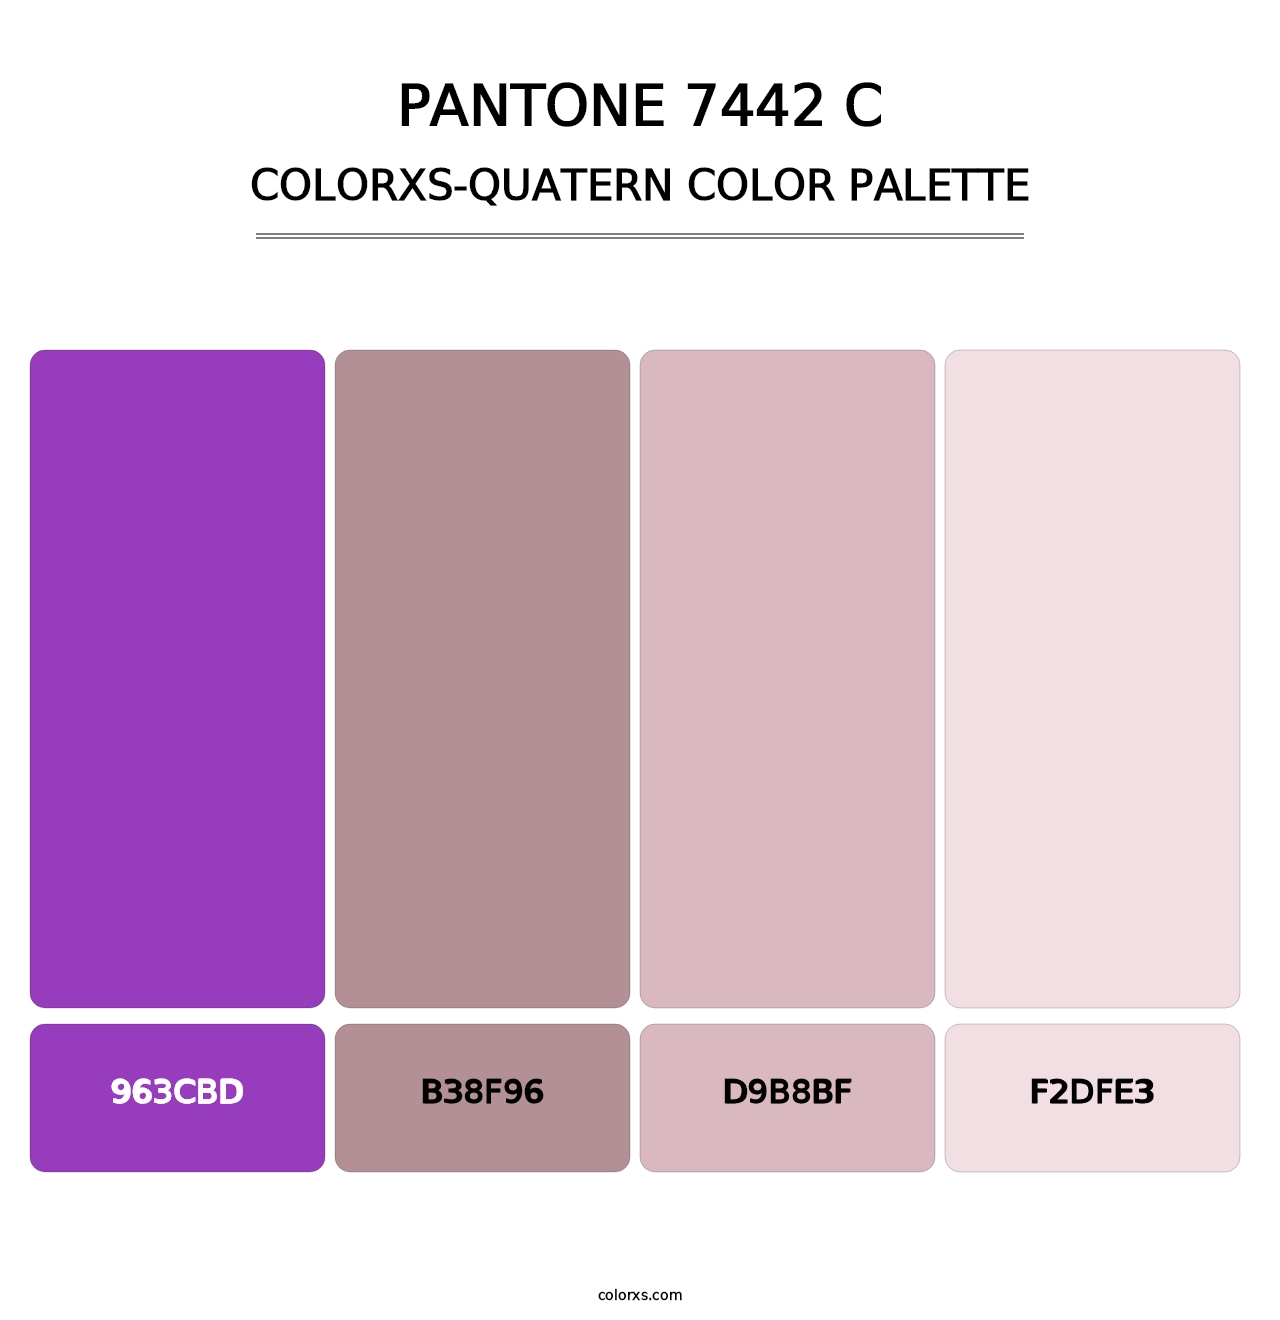 PANTONE 7442 C - Colorxs Quatern Palette